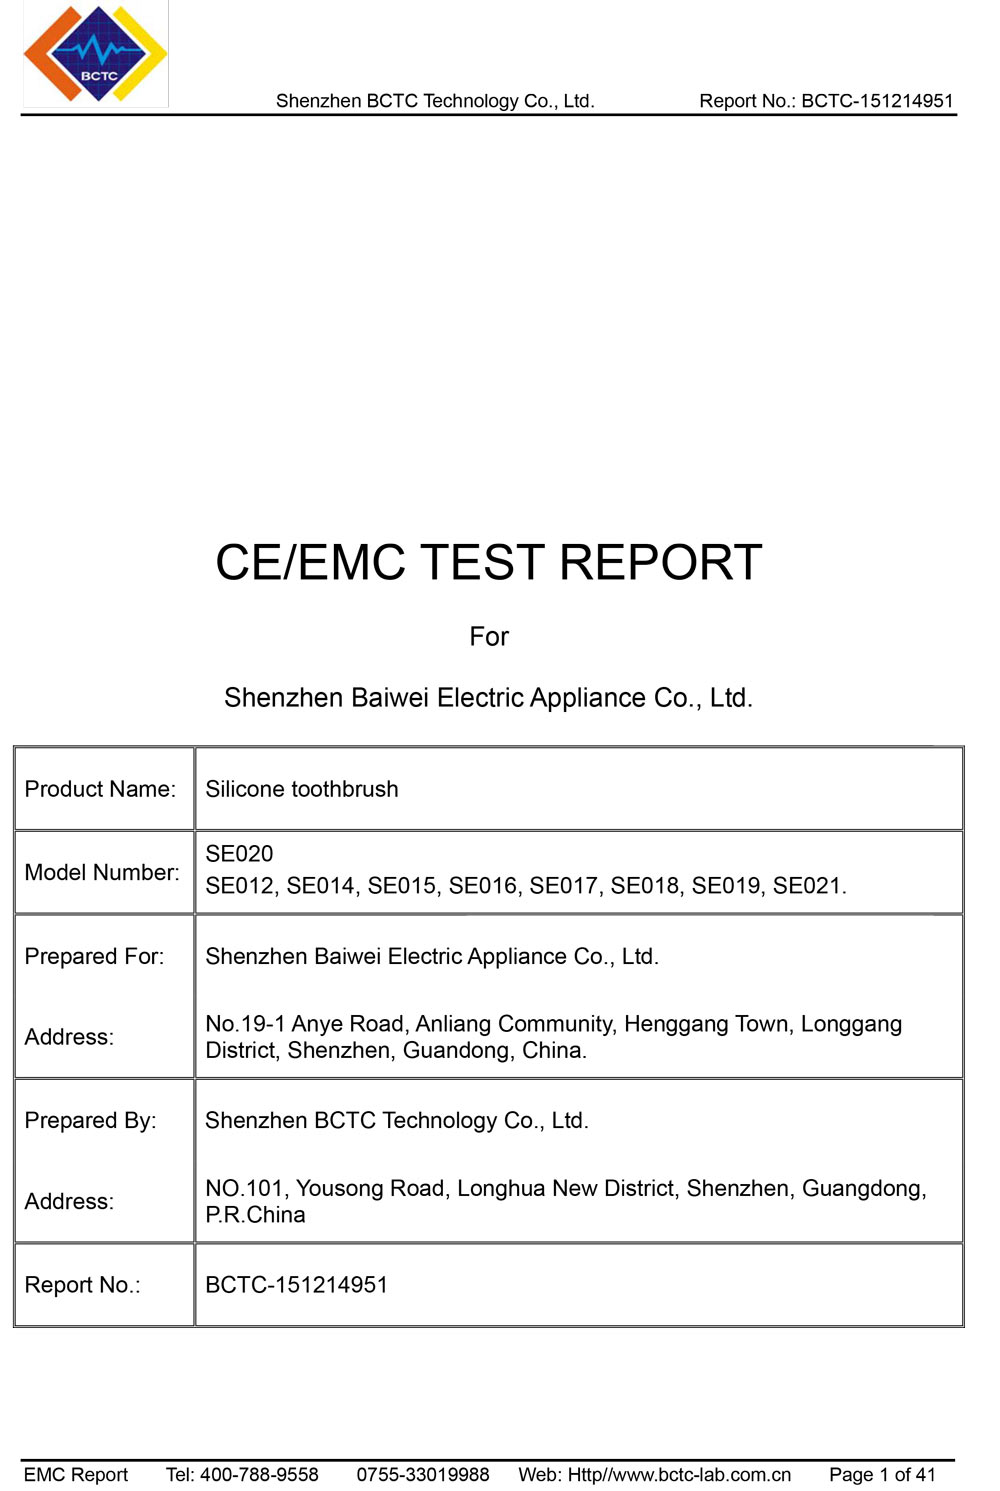 硅胶牙刷 SE020 EMC报告 DC